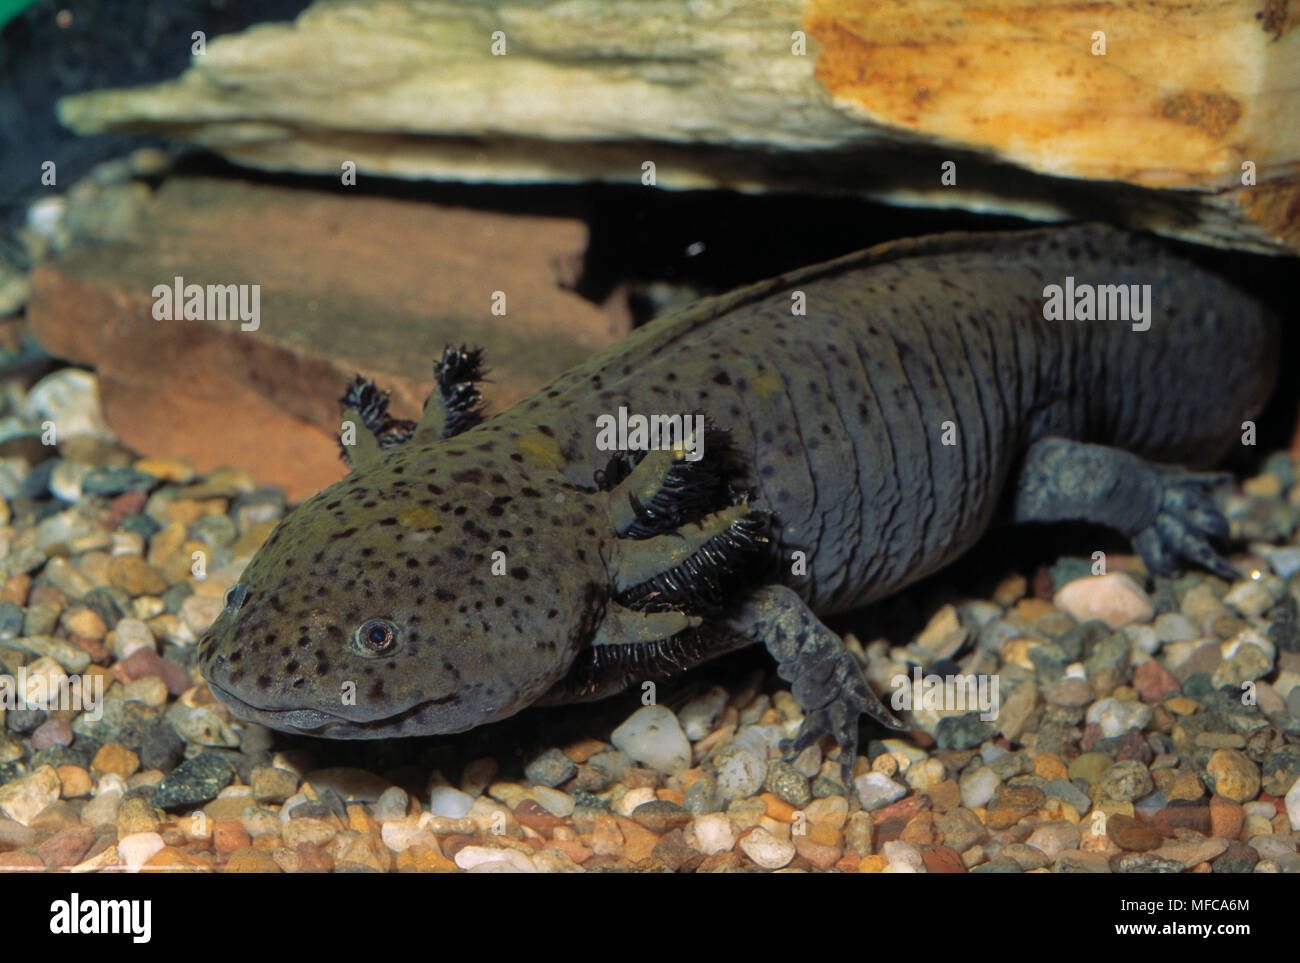 mexican-axolotl-ambystoma-mexicanum-immature-aquatic-stage-displays